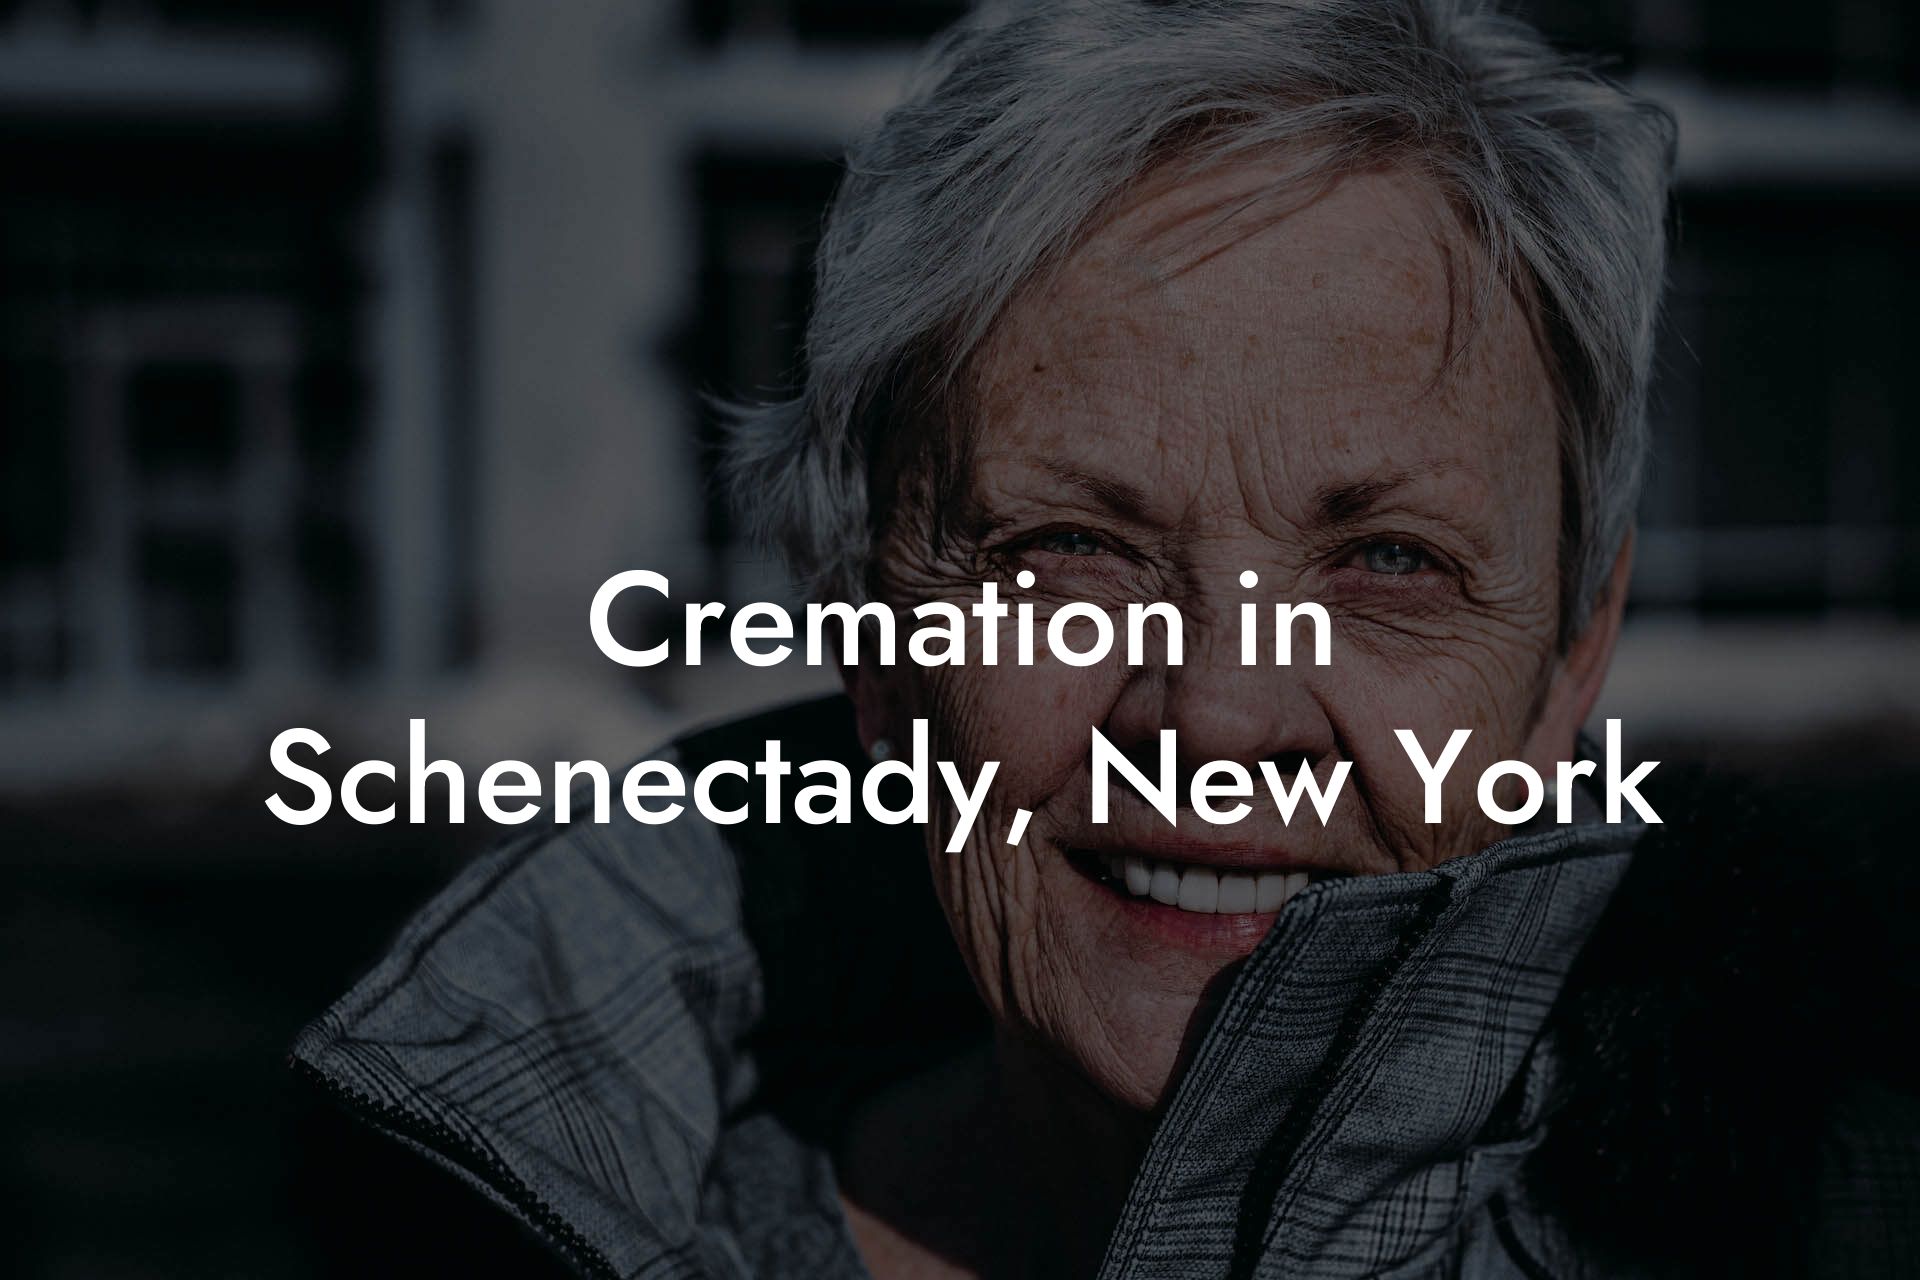 Cremation in Schenectady, New York